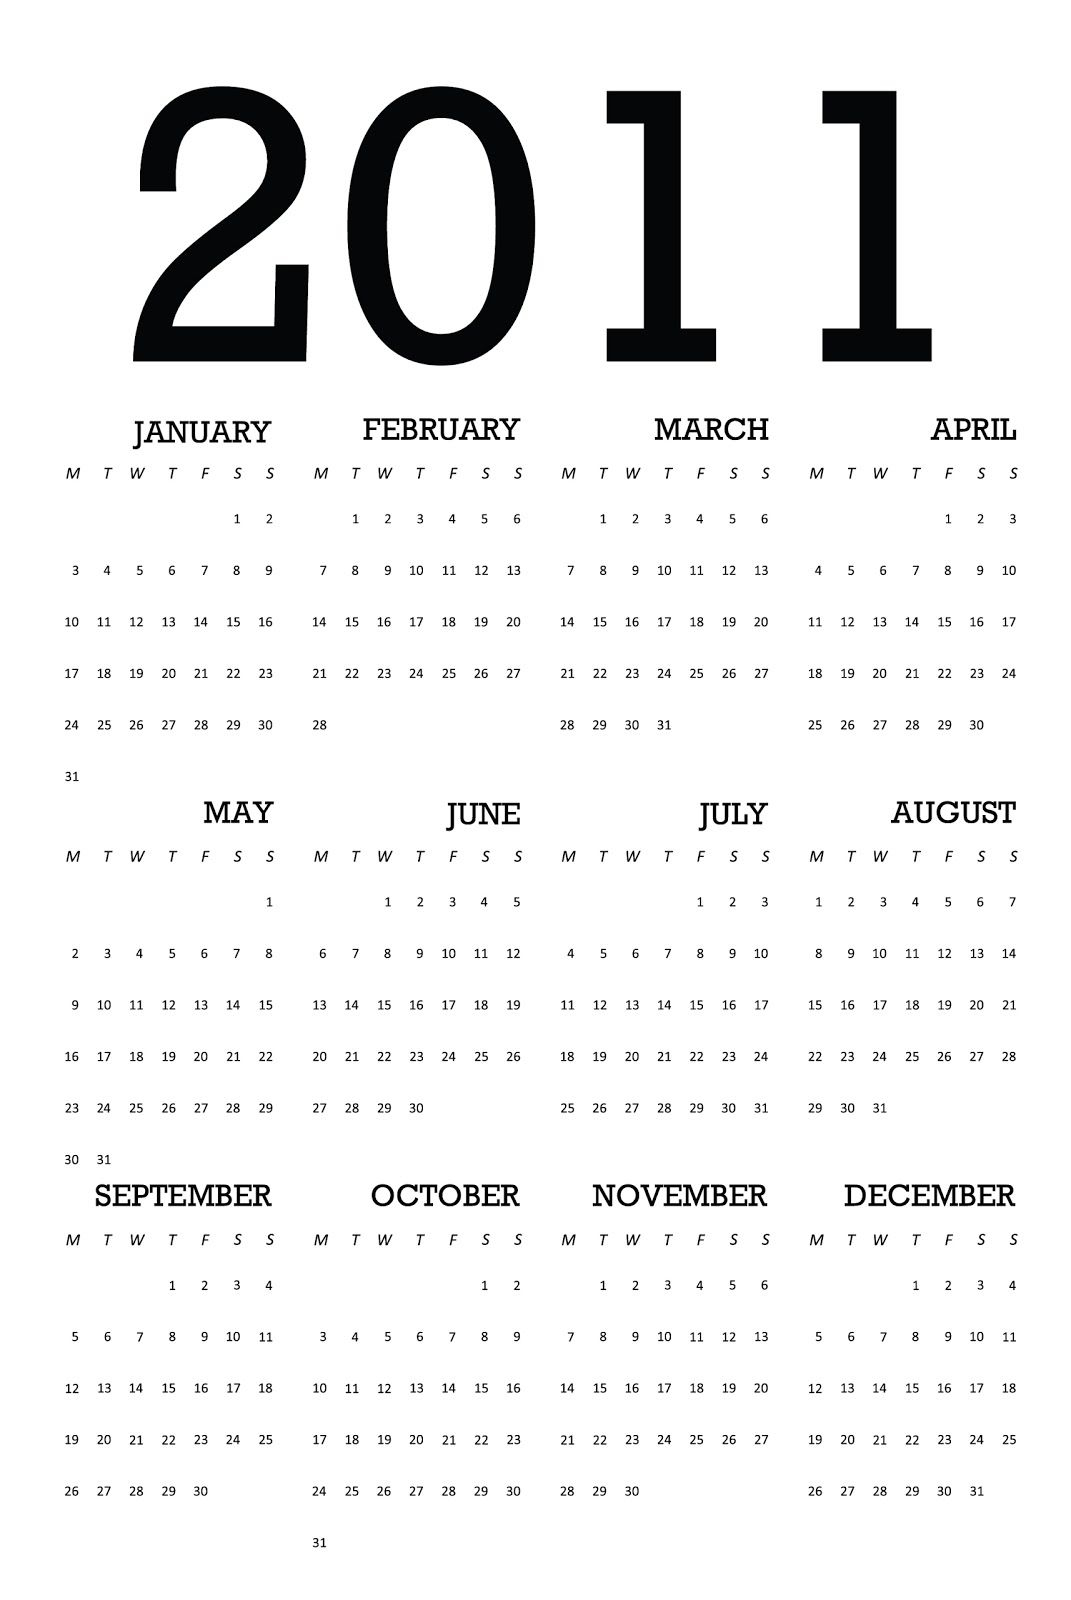 kostantia manthou: calendar 2011